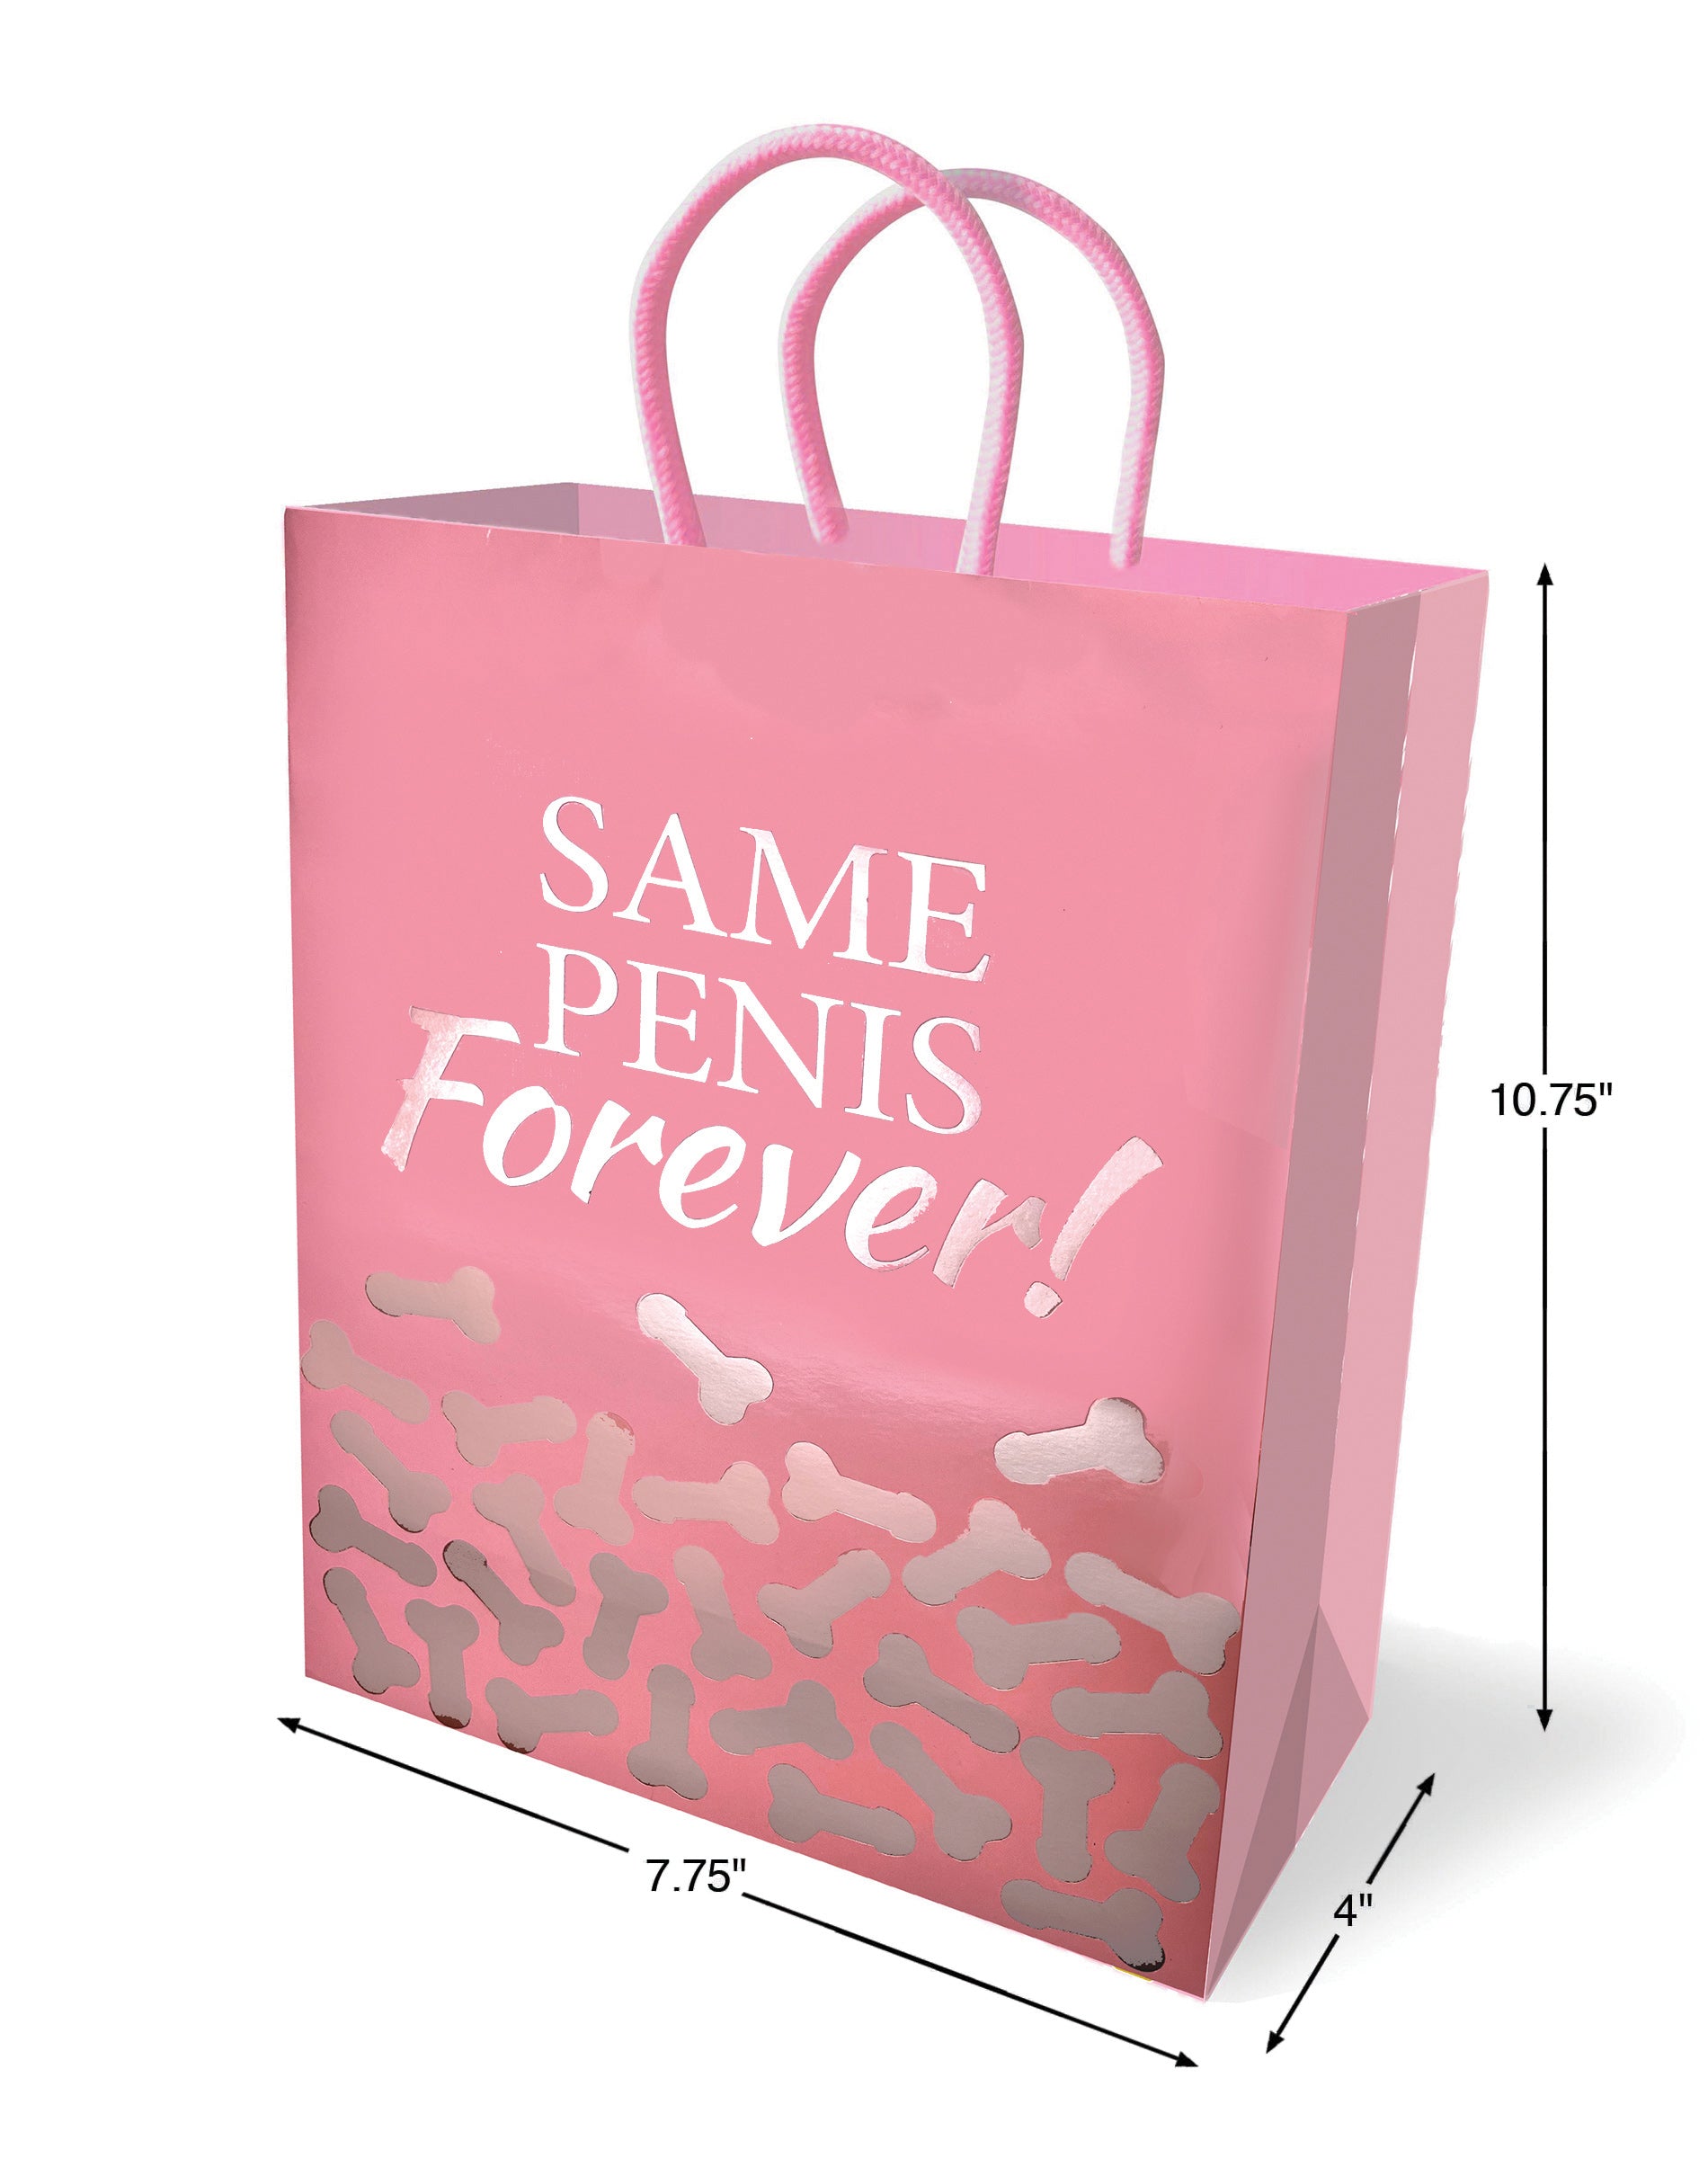 Same Penis Forever - Gift Bag-0